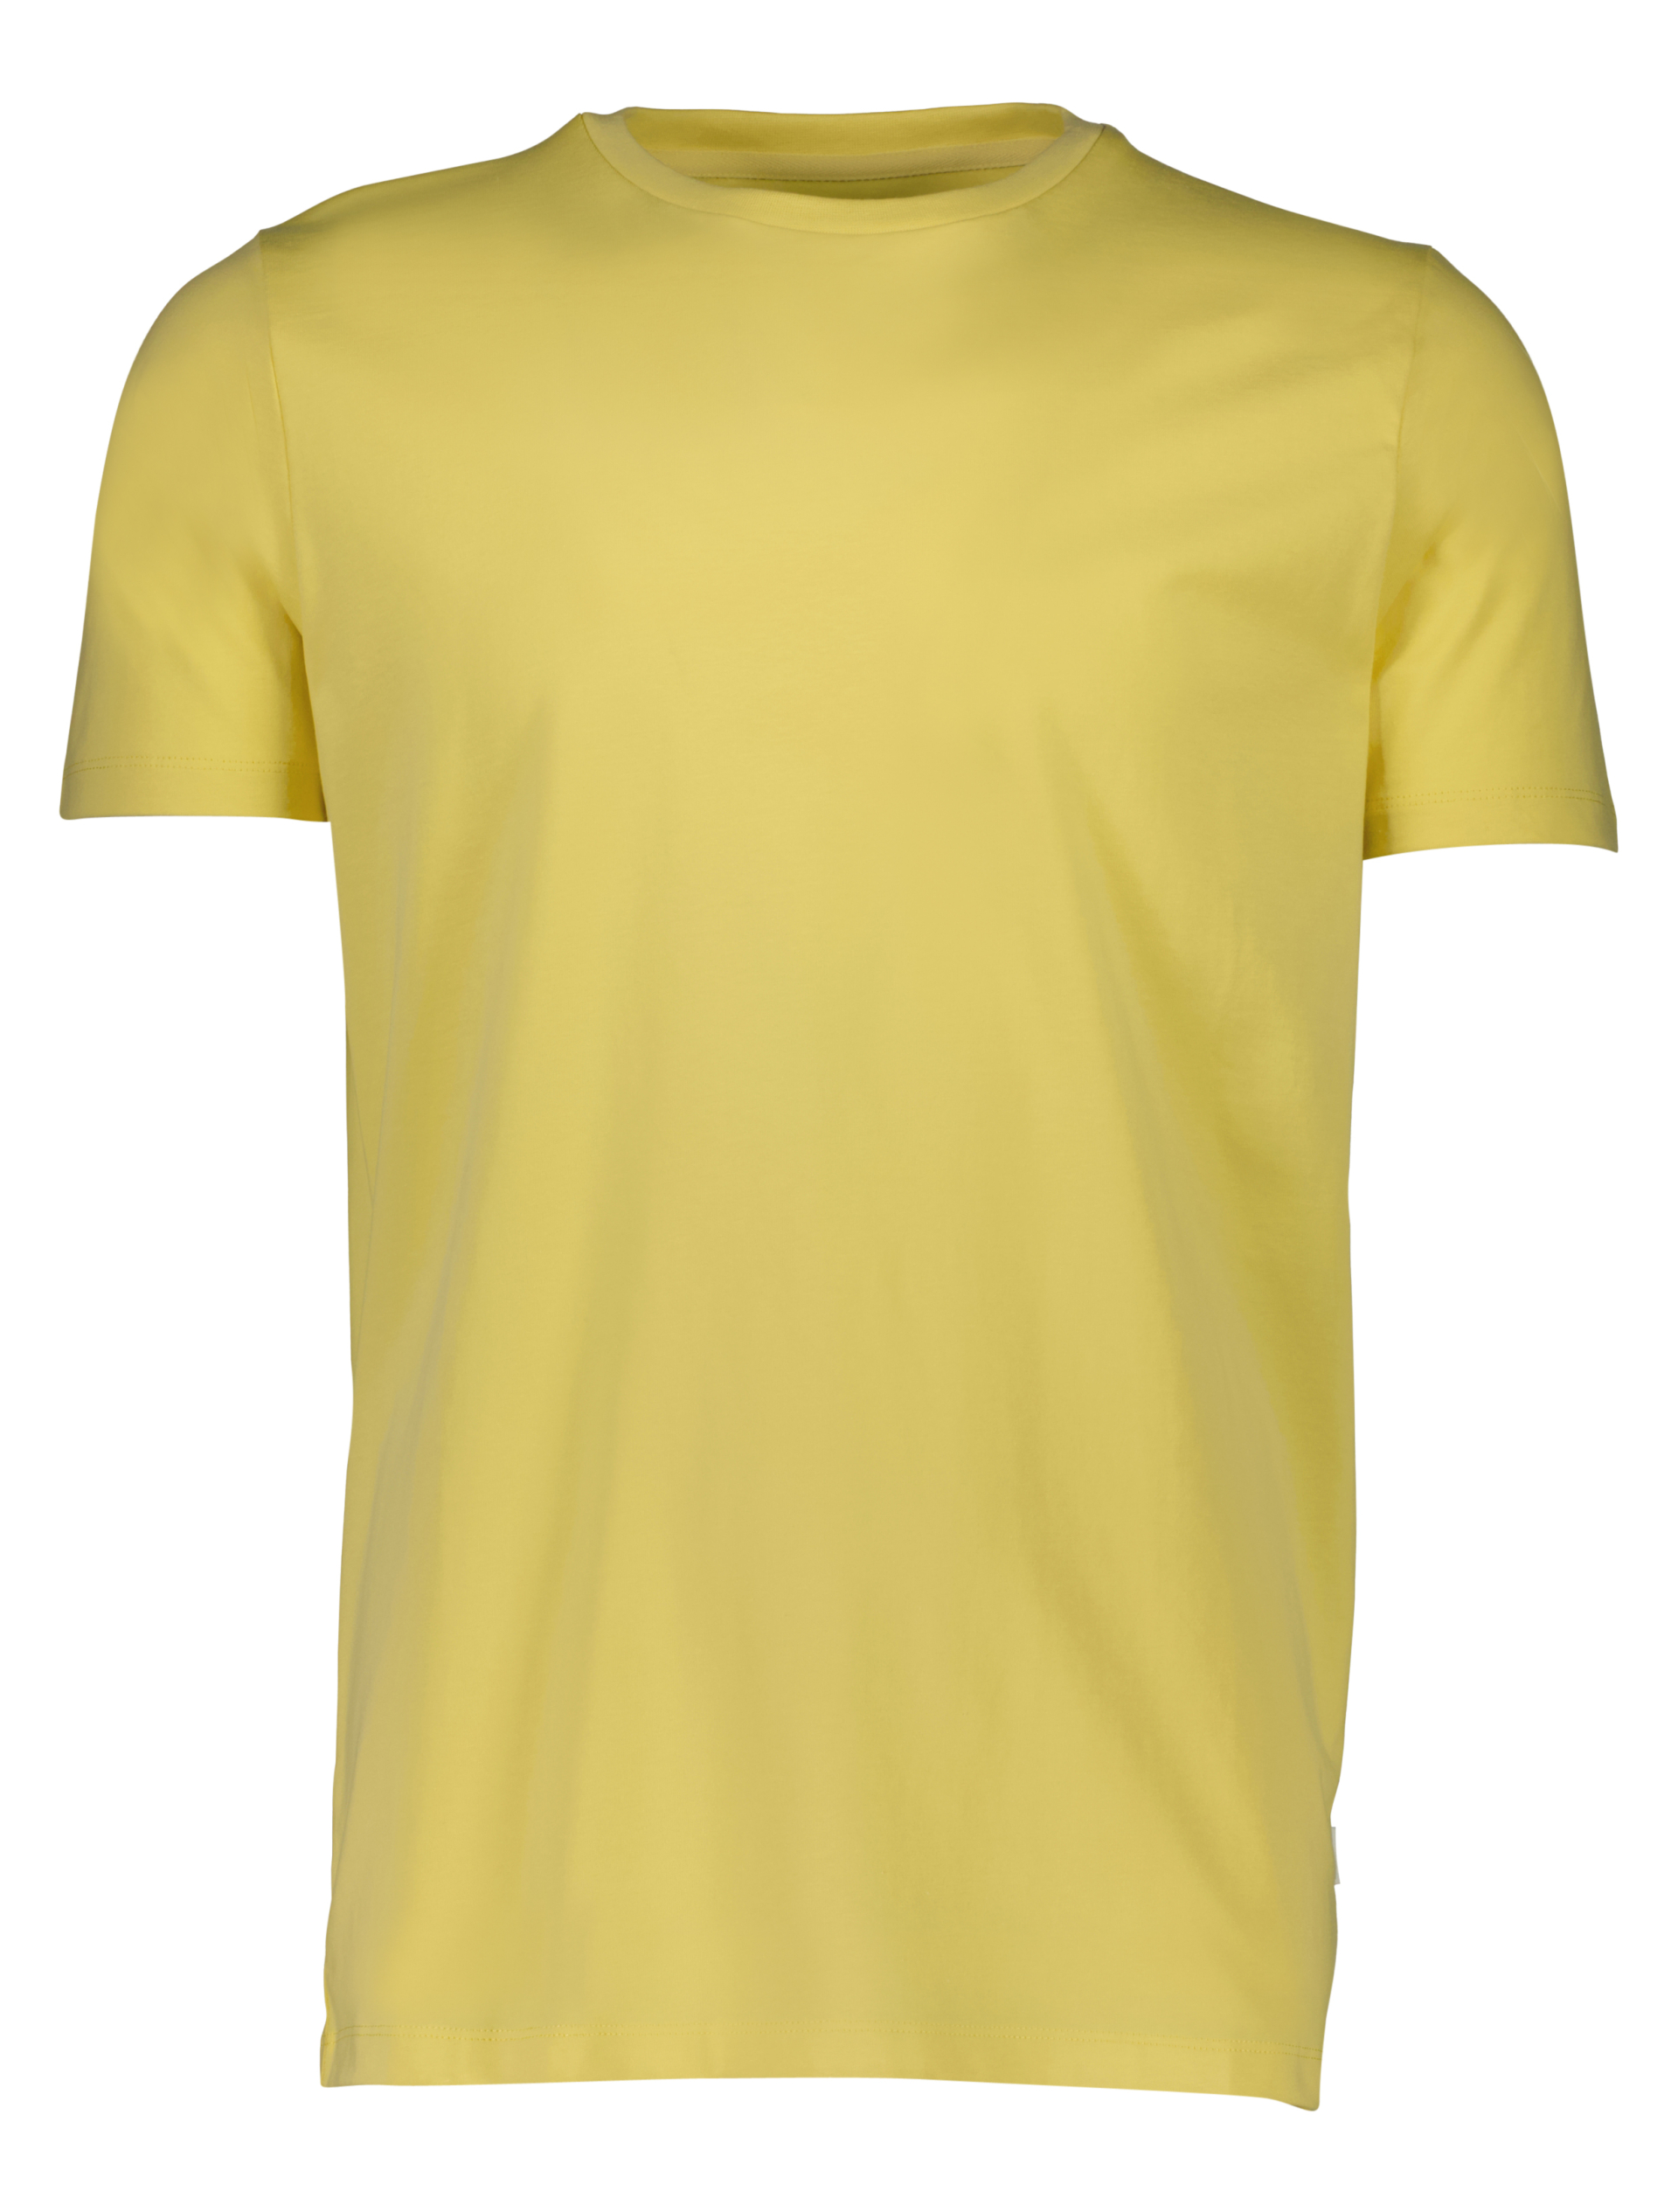 Lindbergh T-shirt rød / pastel yellow